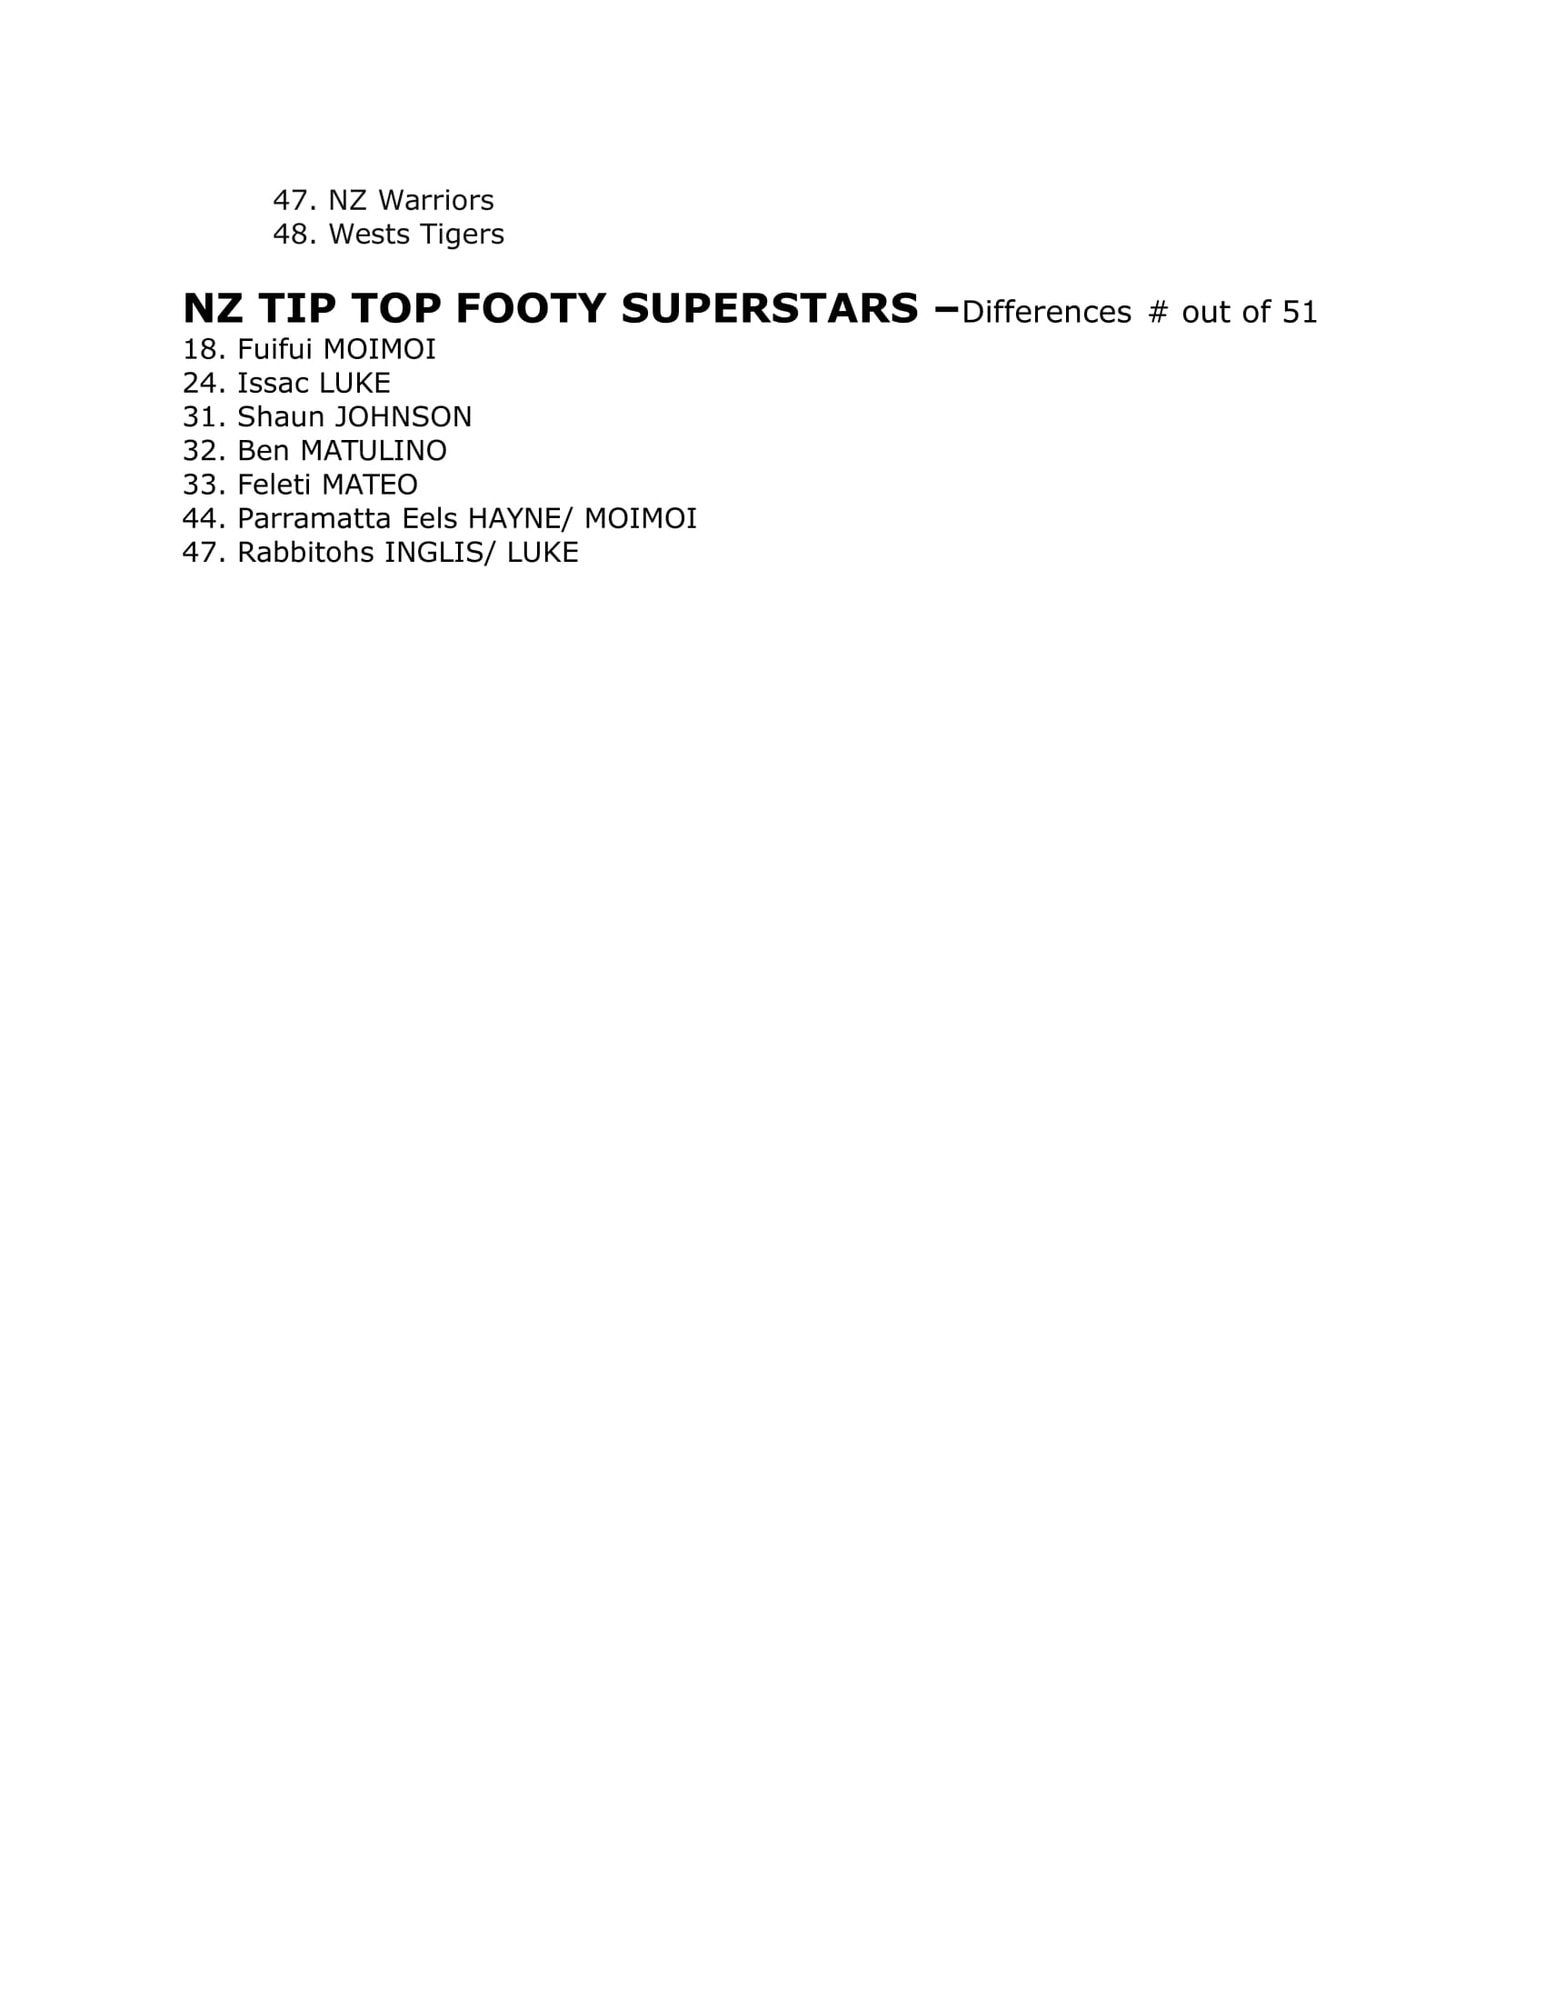 2013 NRL Footy Superstars-2.jpg